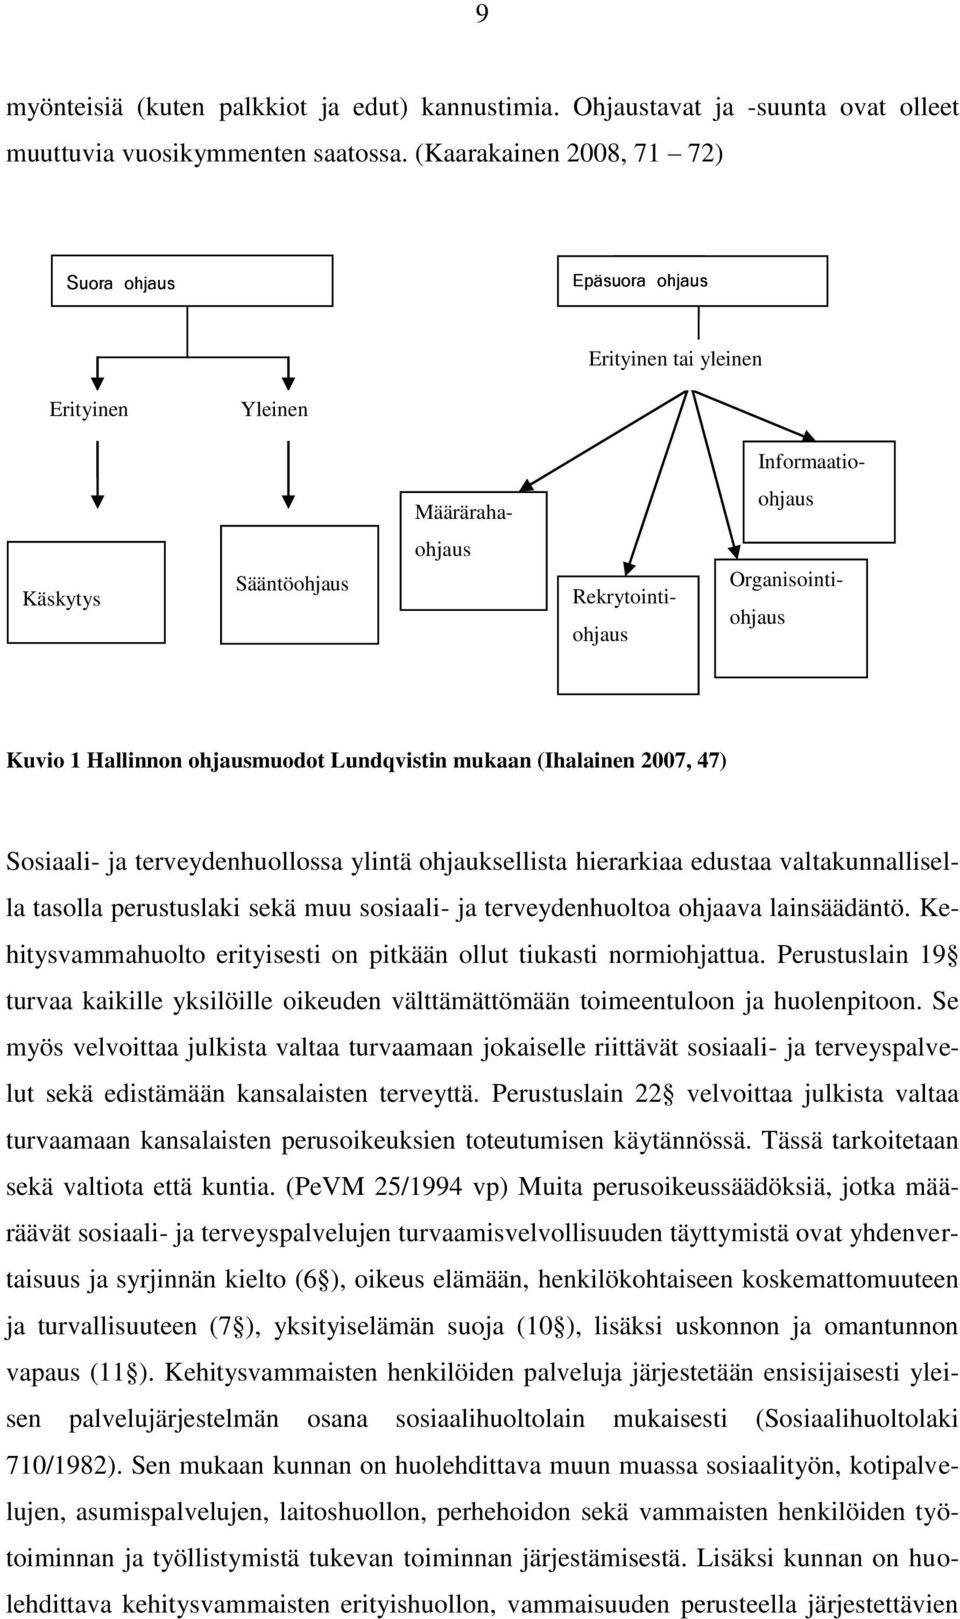 Hallinnon ohjausmuodot Lundqvistin mukaan (Ihalainen 2007, 47) Sosiaali- ja terveydenhuollossa ylintä ohjauksellista hierarkiaa edustaa valtakunnallisella tasolla perustuslaki sekä muu sosiaali- ja